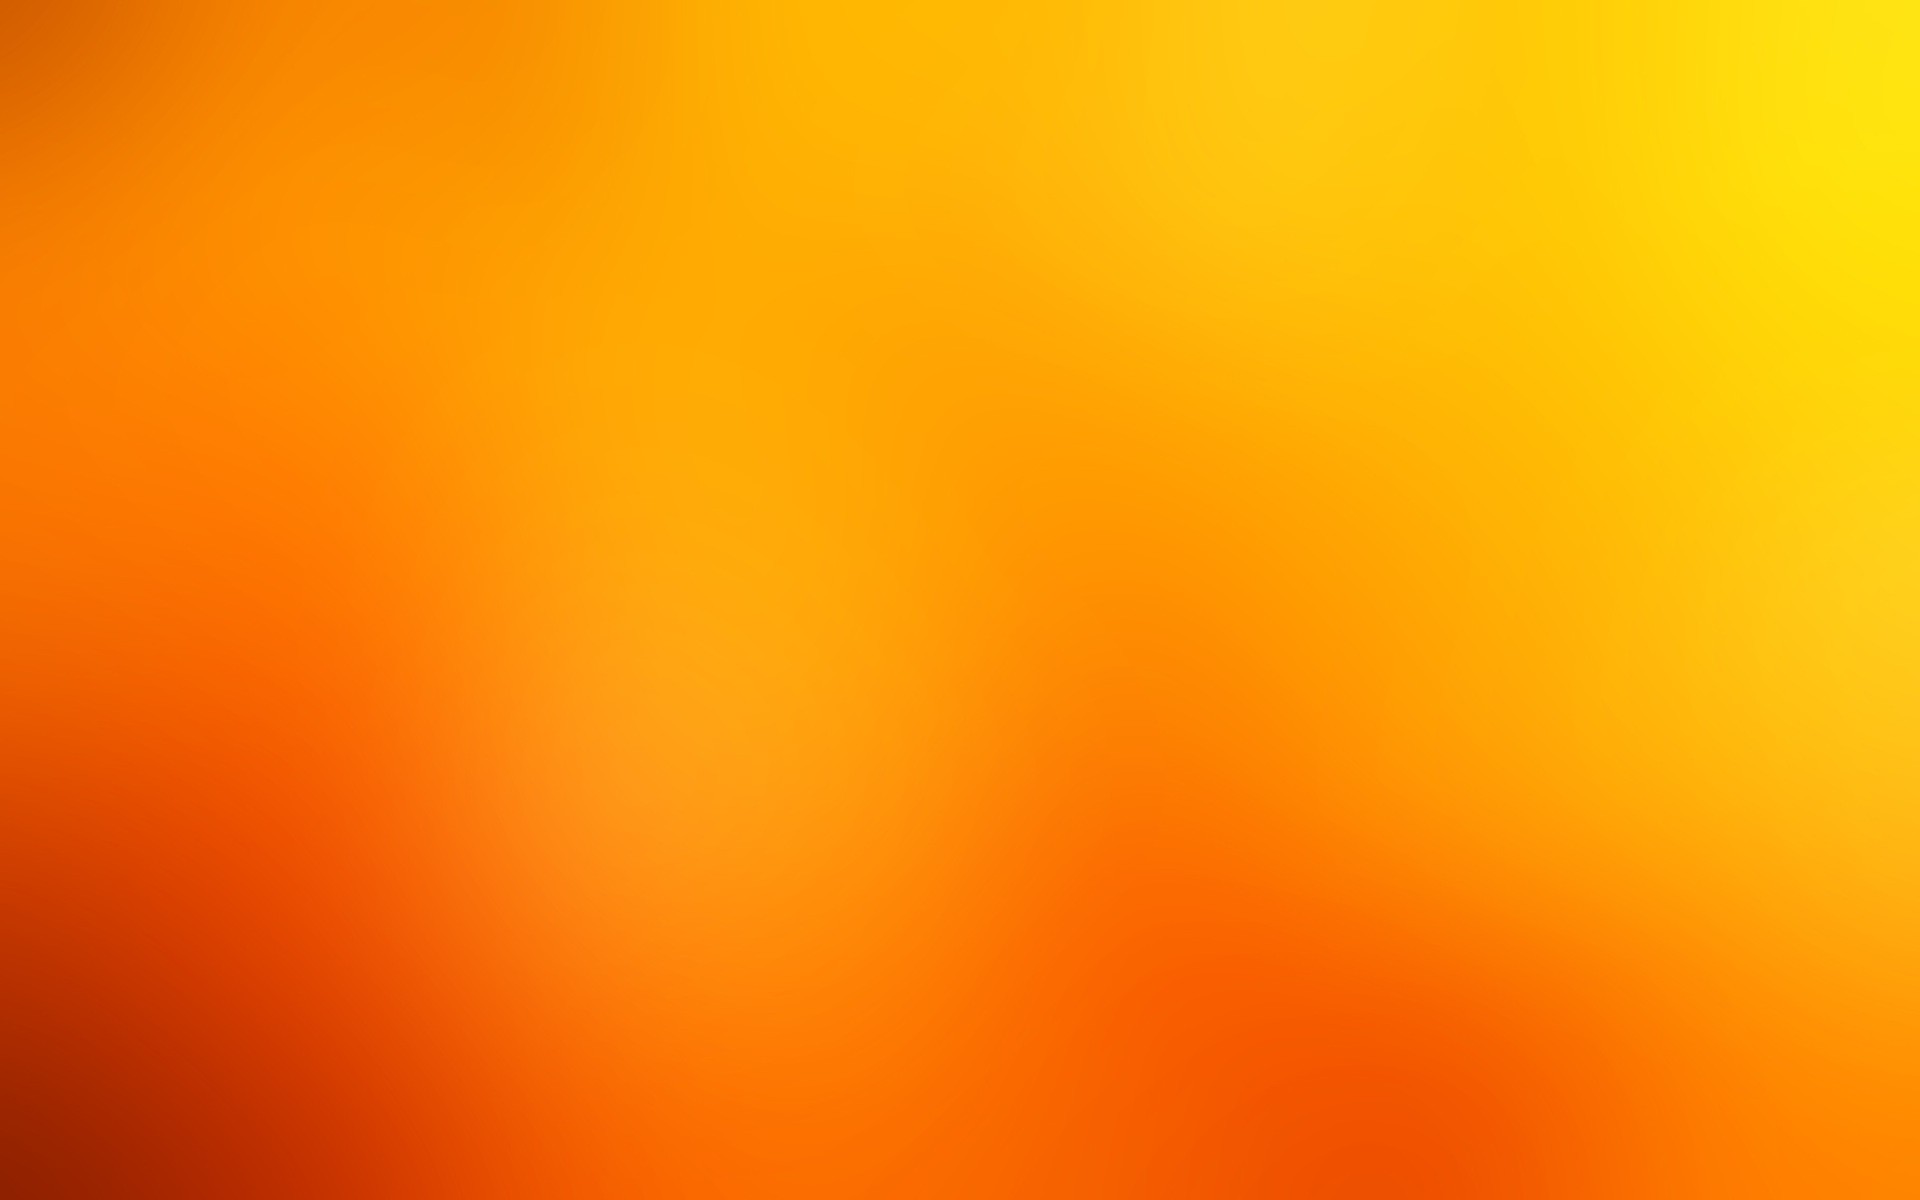 Gaussian Blur Orange Background Wallpaper